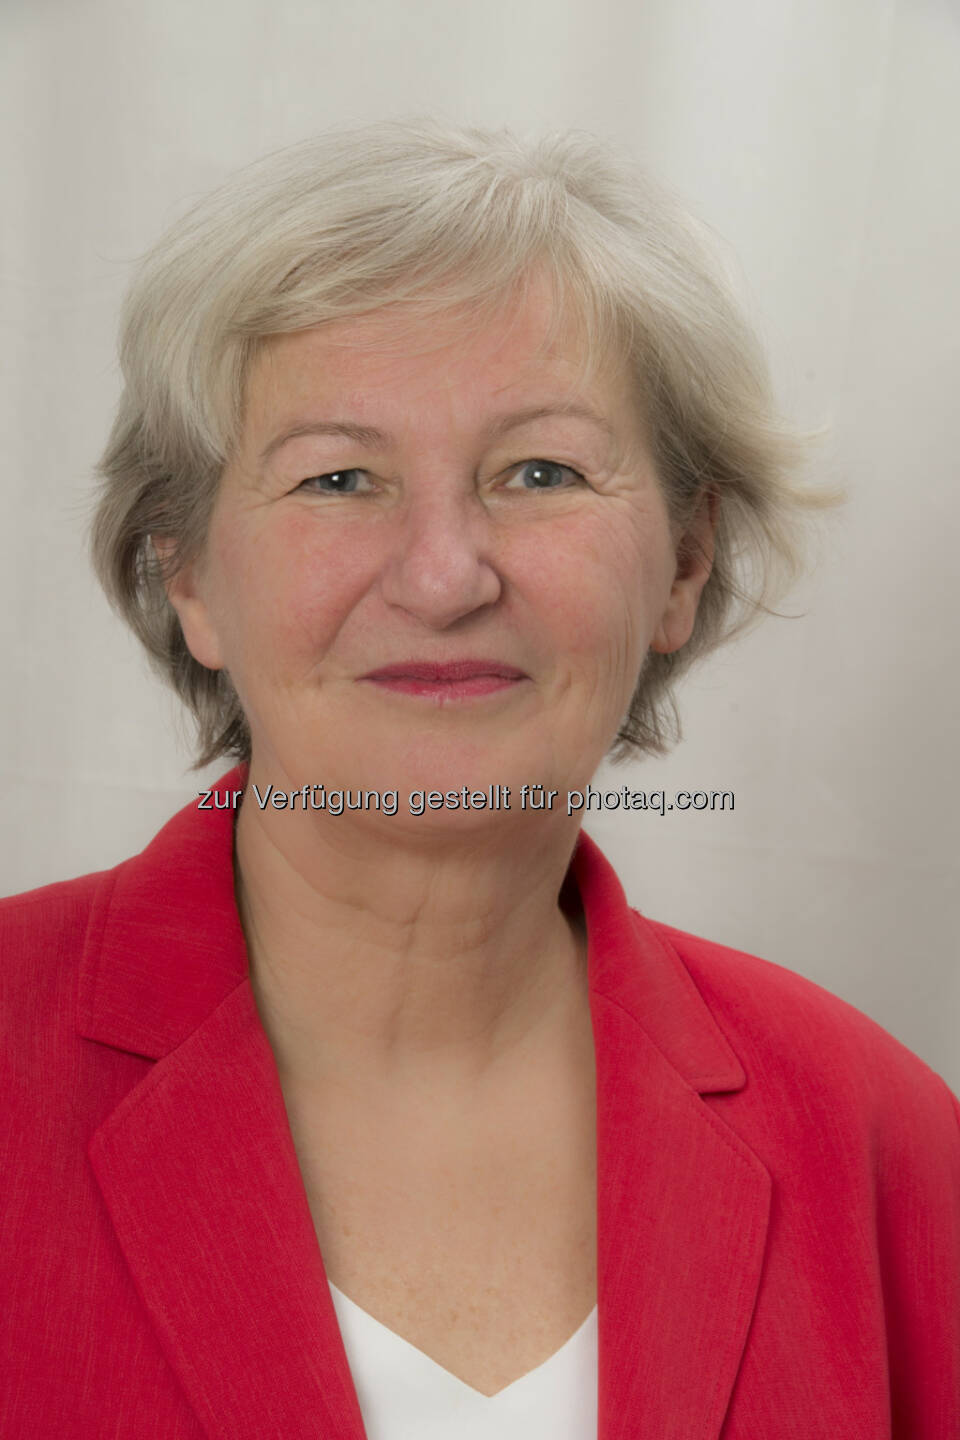 Karin Kolland : Kandidatin für 1. österreichische Bundespräsidentin : Fotocredit:  ©2016 Irmgard Daempfer www.immagine.at